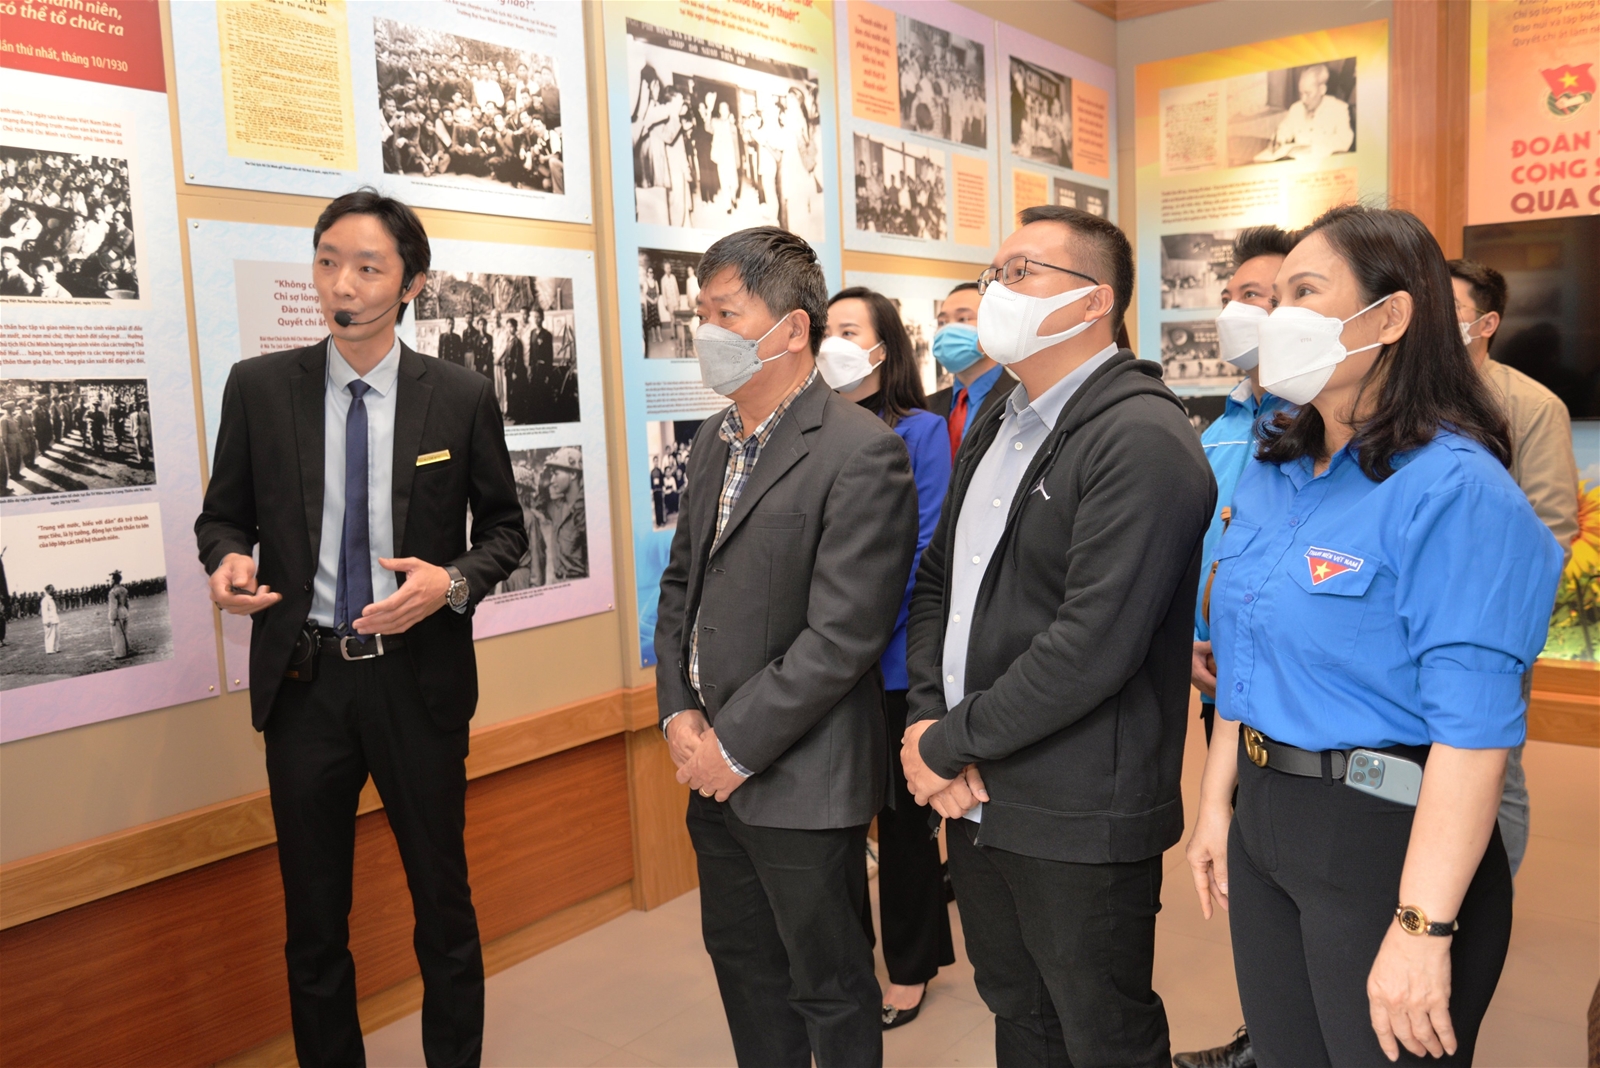 Khai mạc trưng bày chuyên đề “Đoàn Thanh niên Cộng sản Hồ Chí Minh qua các kỳ Đại hội” tại Khu Di tích Phủ Chủ tịch (ngày 25/3/2022)